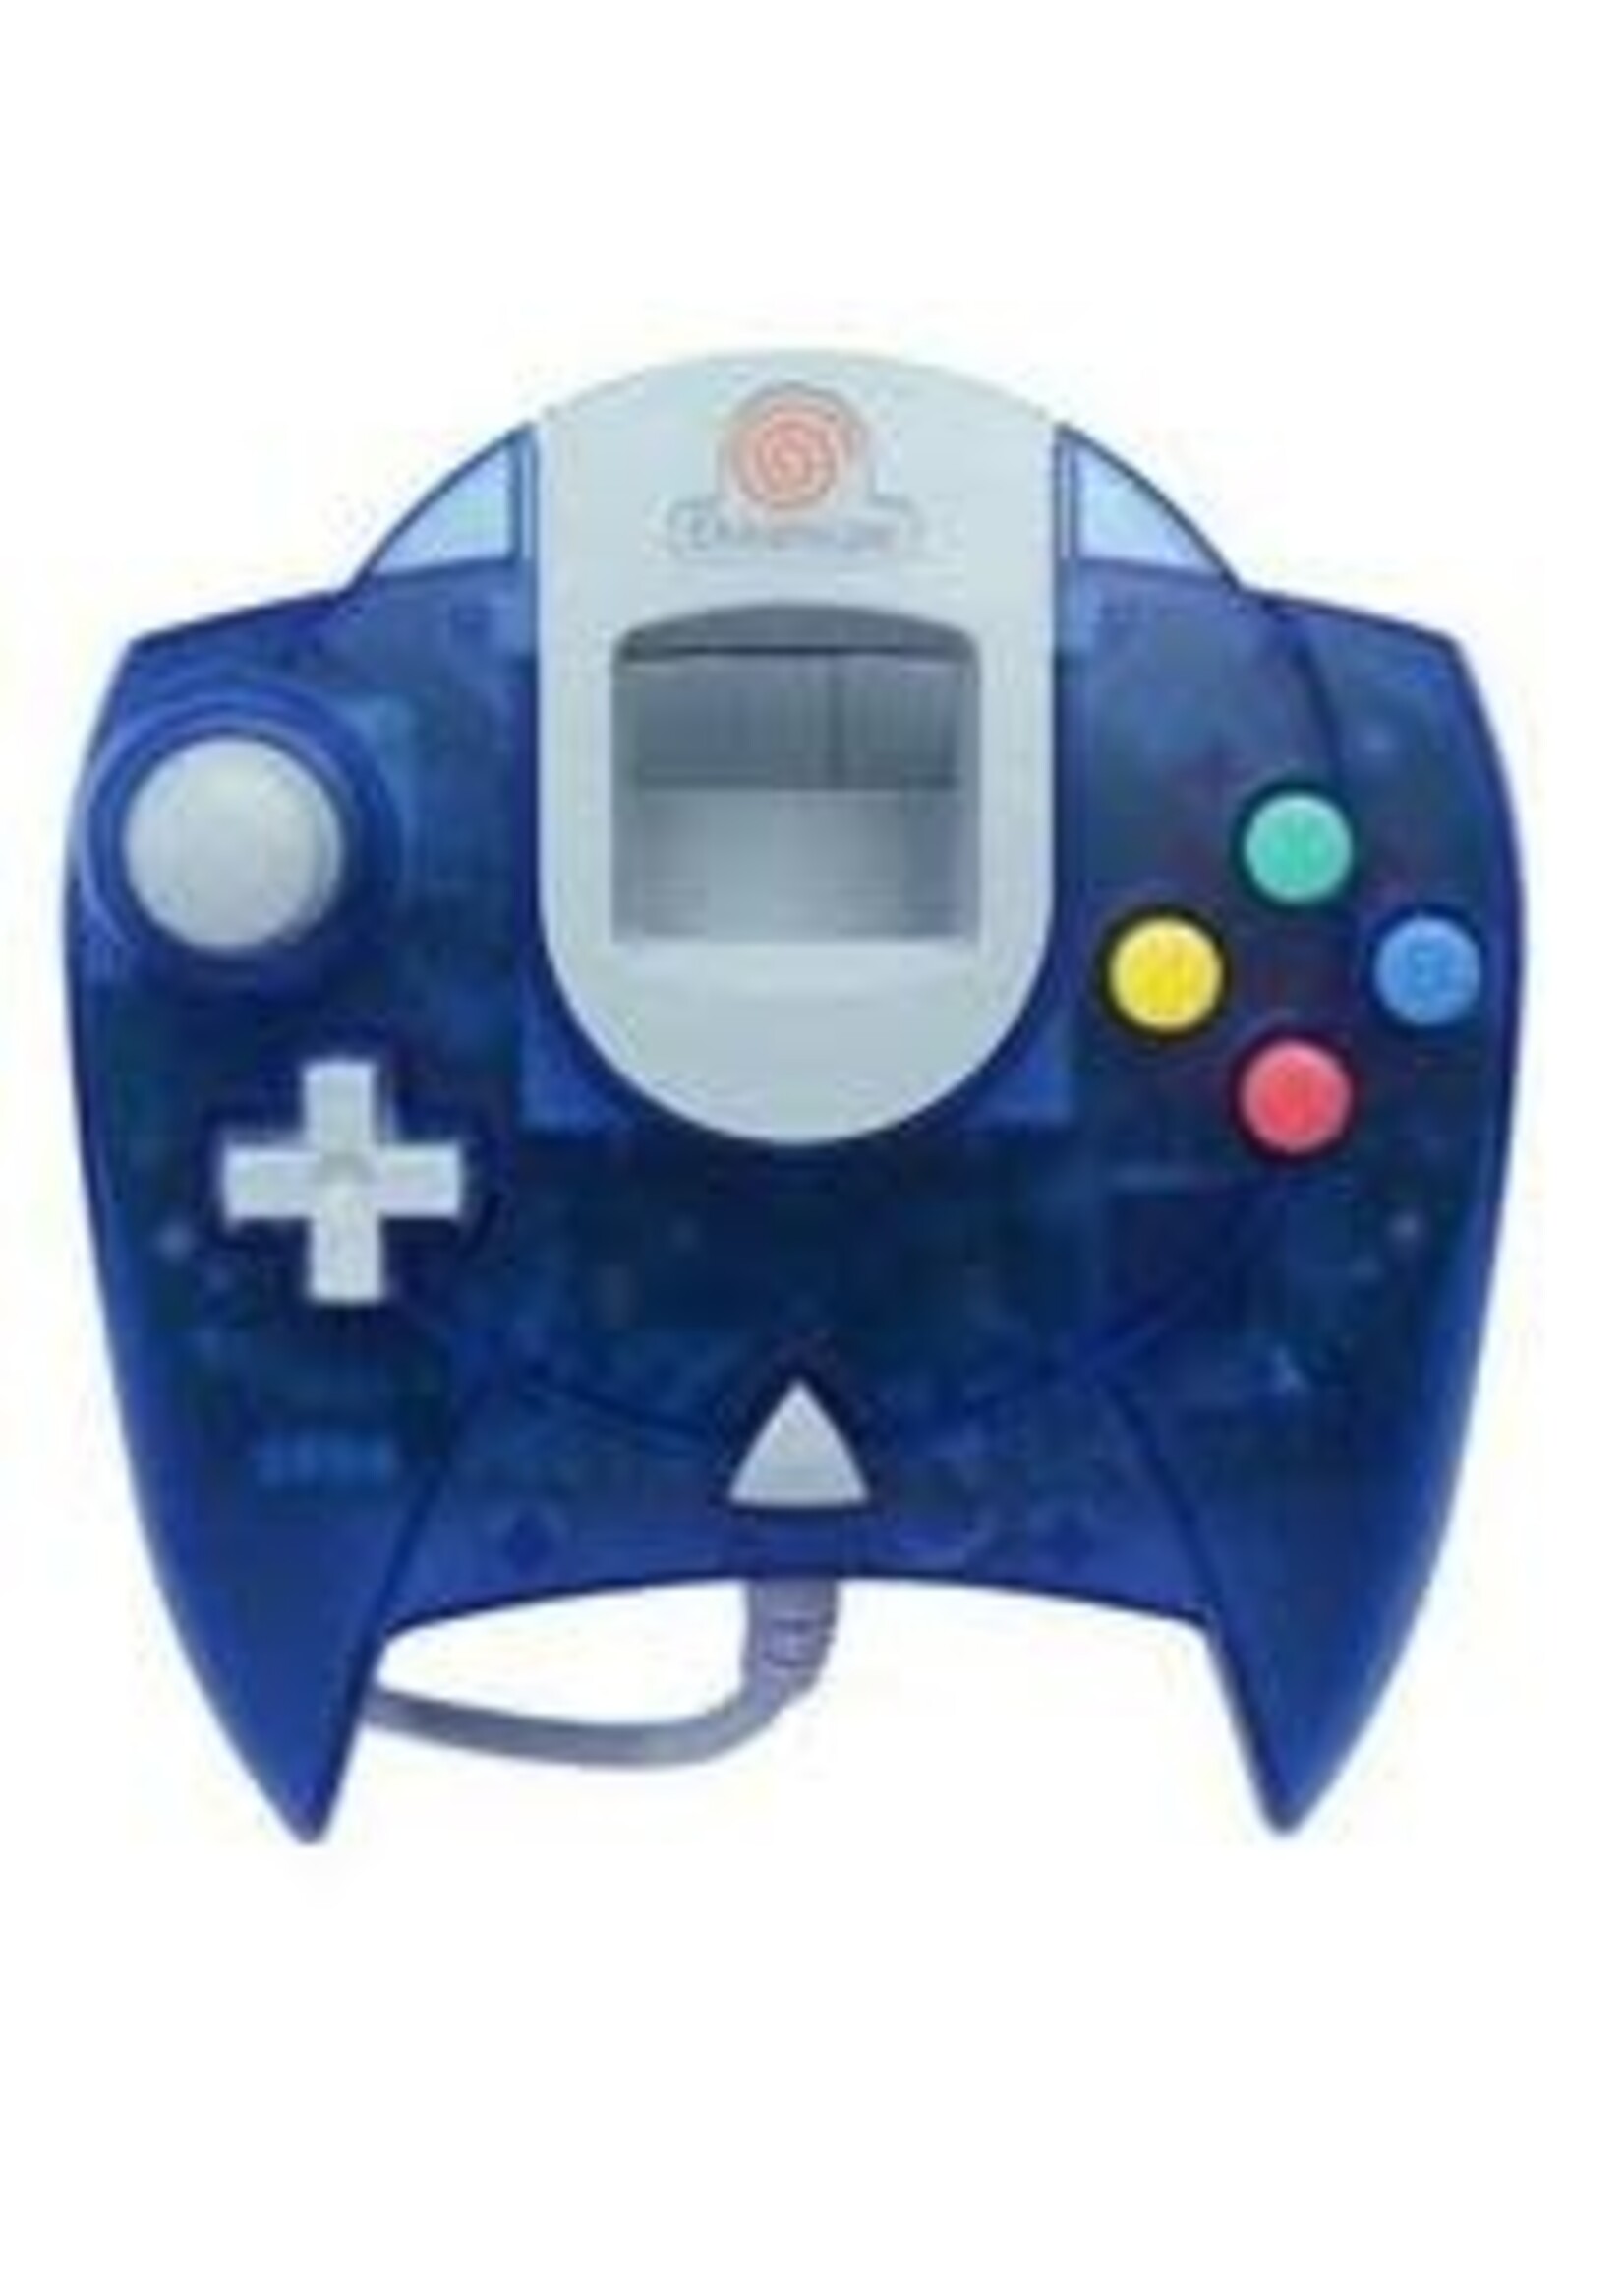 Blue Sega Dreamcast Controller Sega Dreamcast CIB